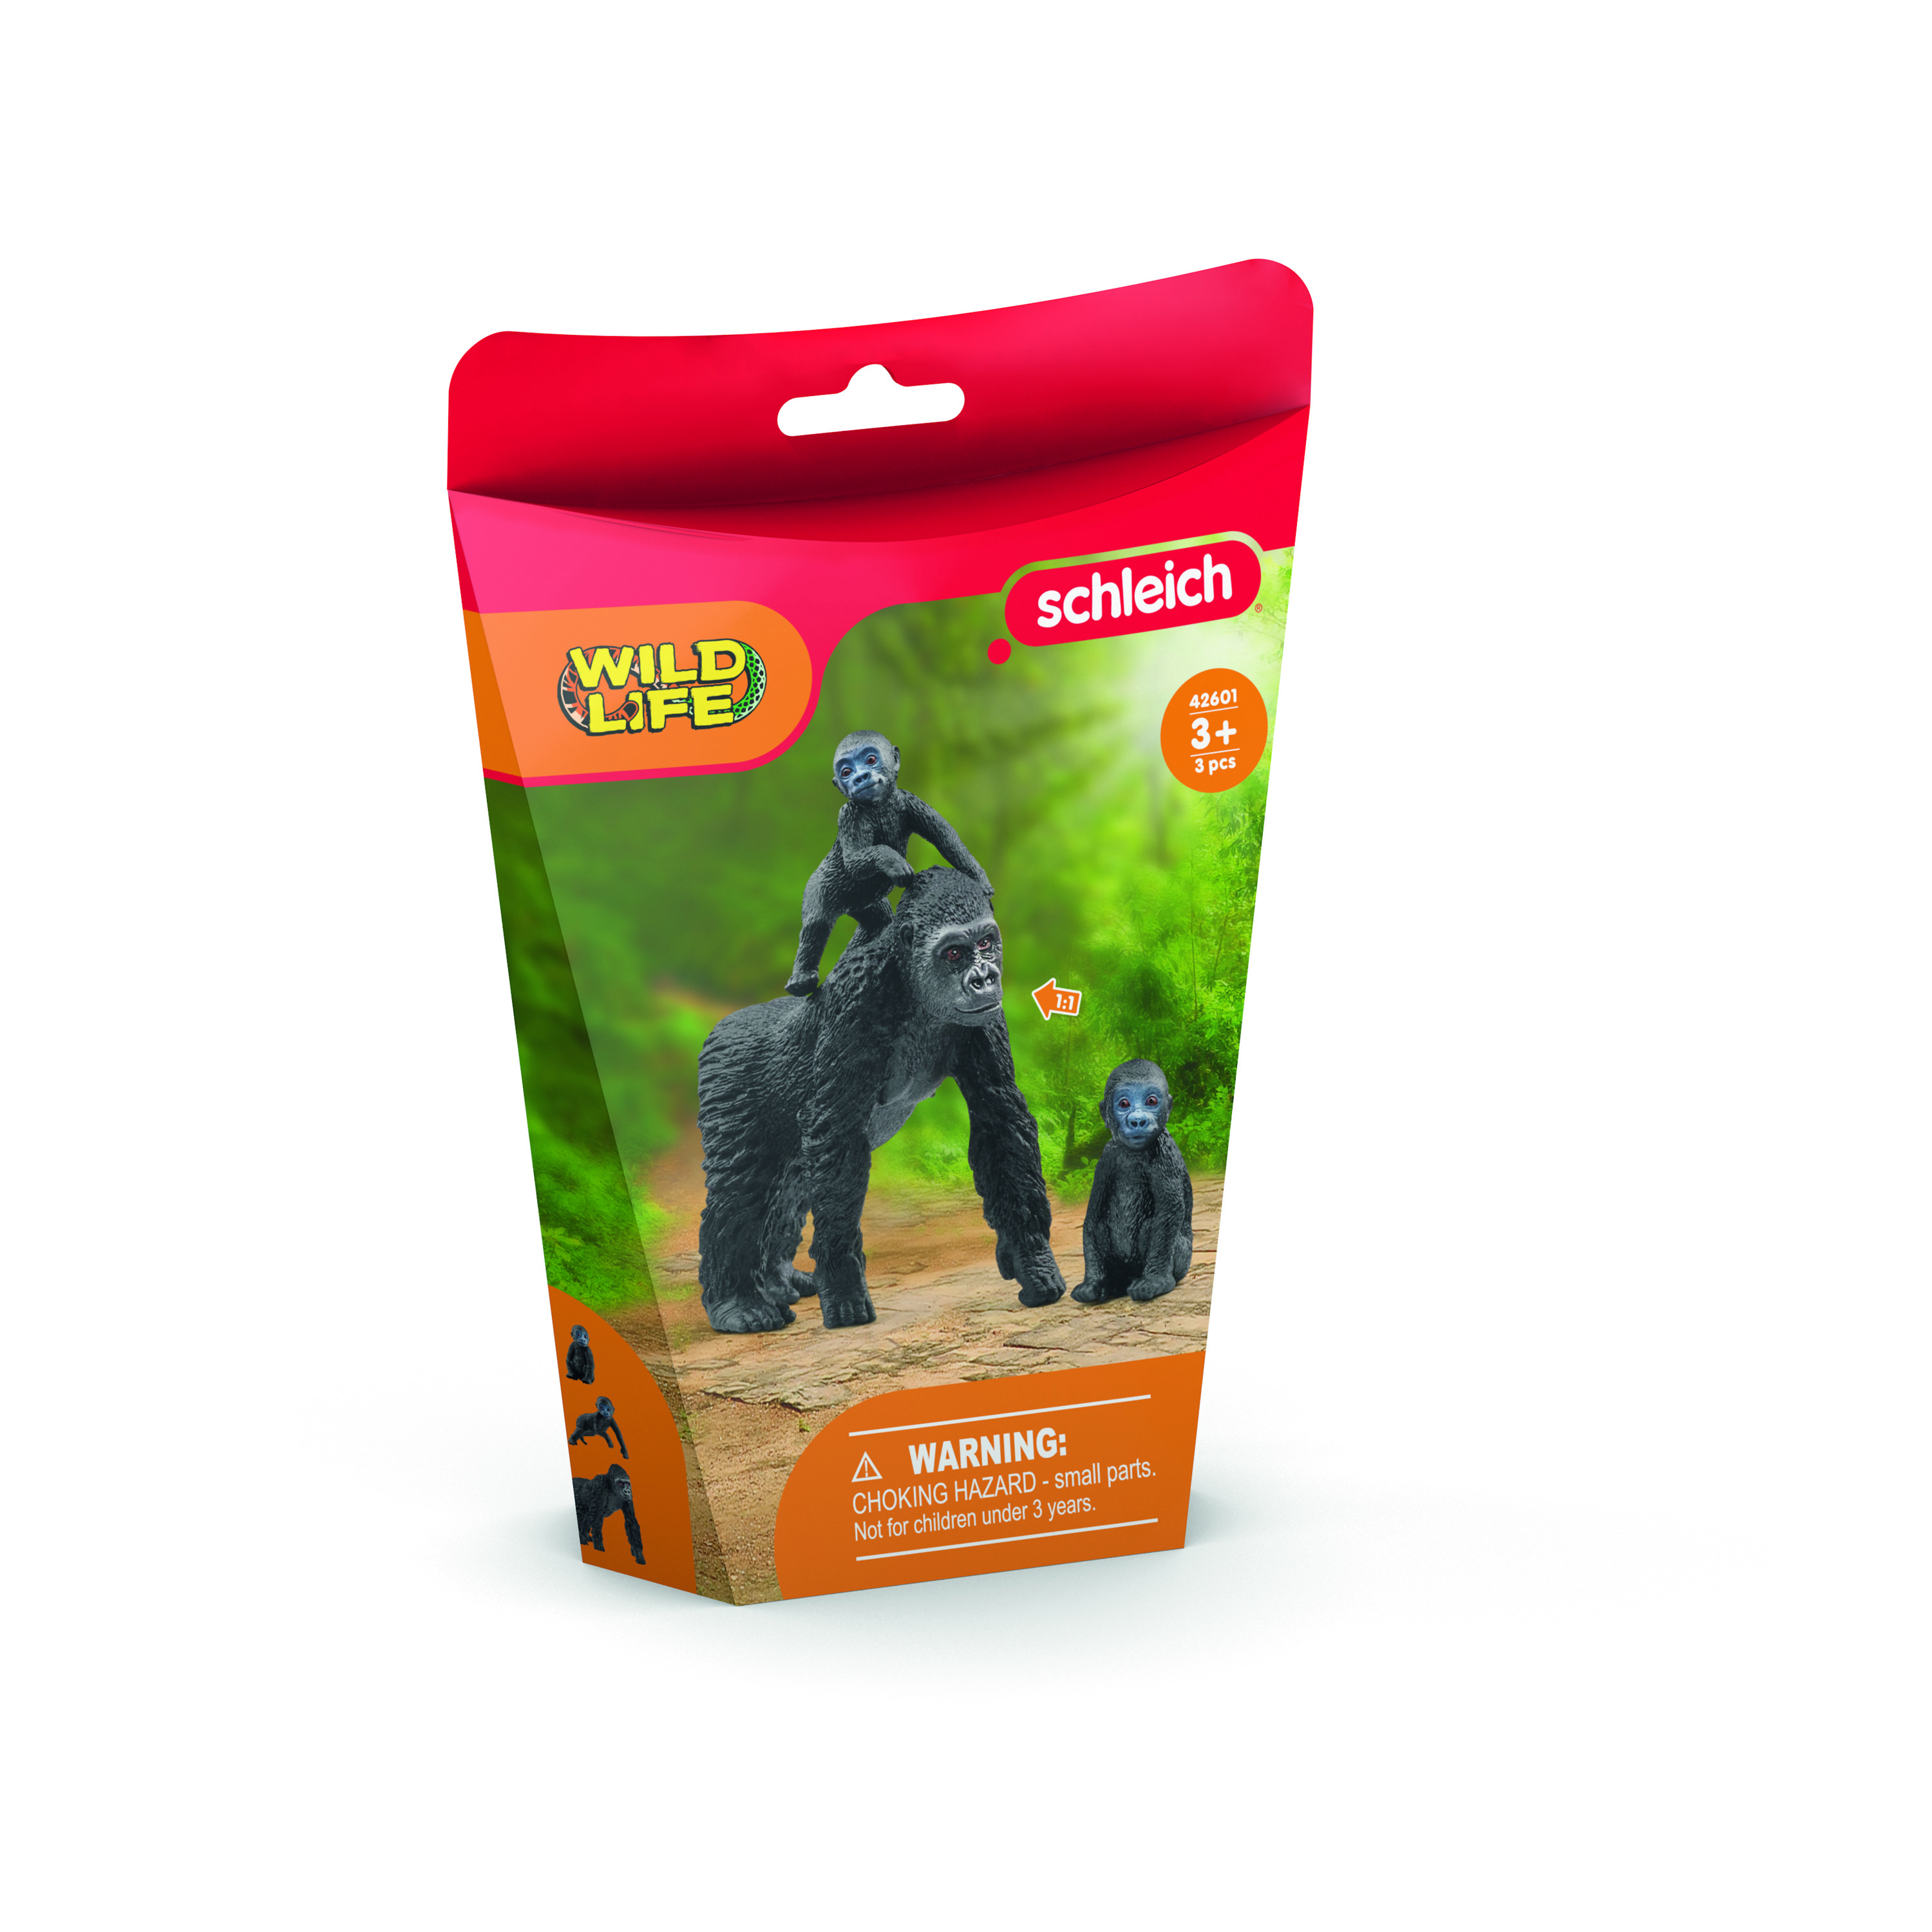 SCHLEICH Wild Life 42601 Flachland Gorilla Spielfigur Schwarz Familie